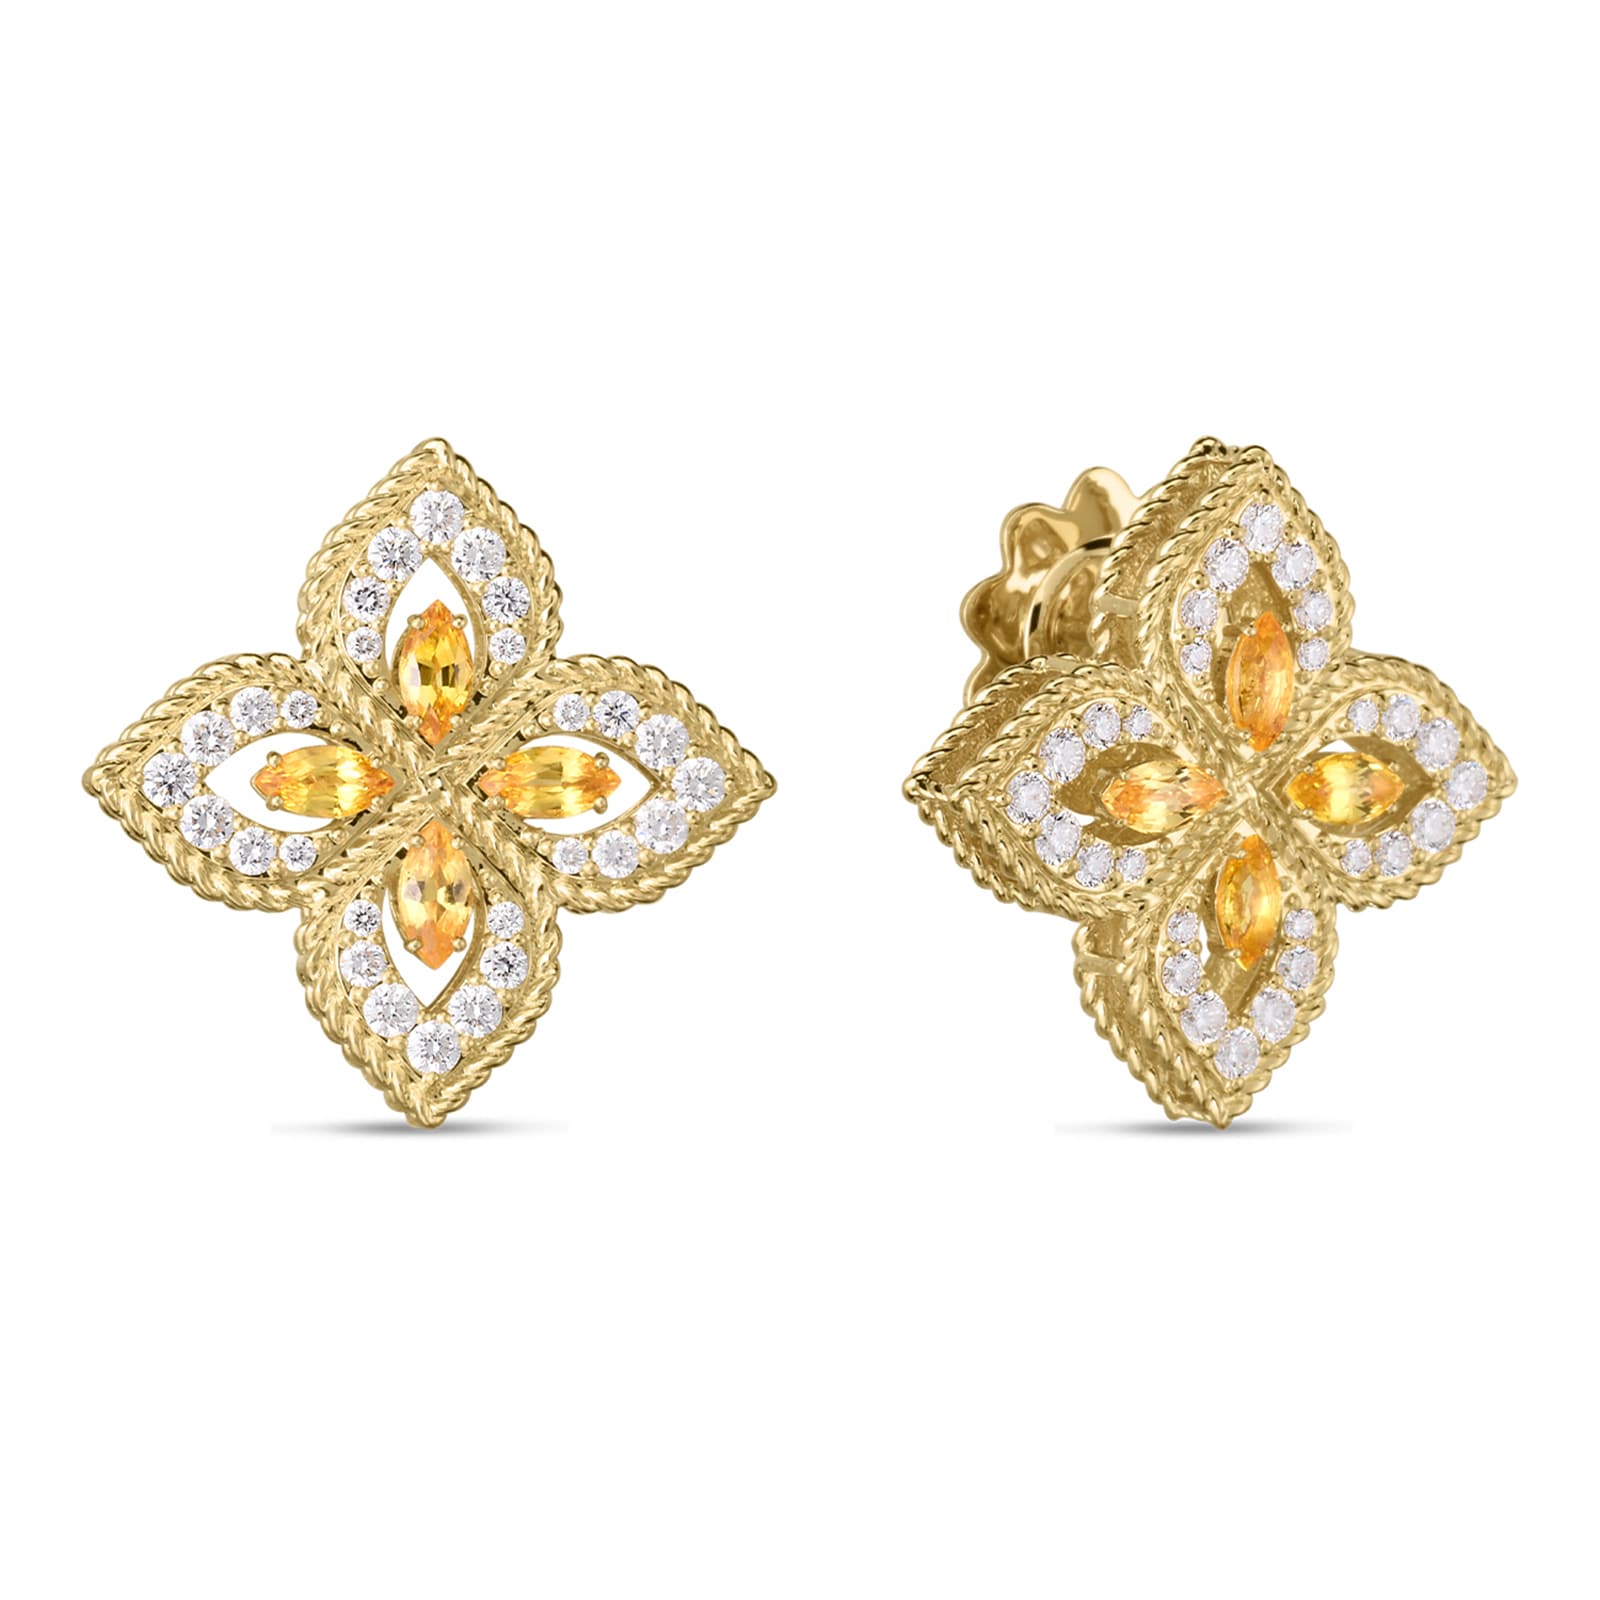 【新品爆買い】78862-26絶品Diamond 18K Earrings SPAIN New 6.6g イエローゴールド台